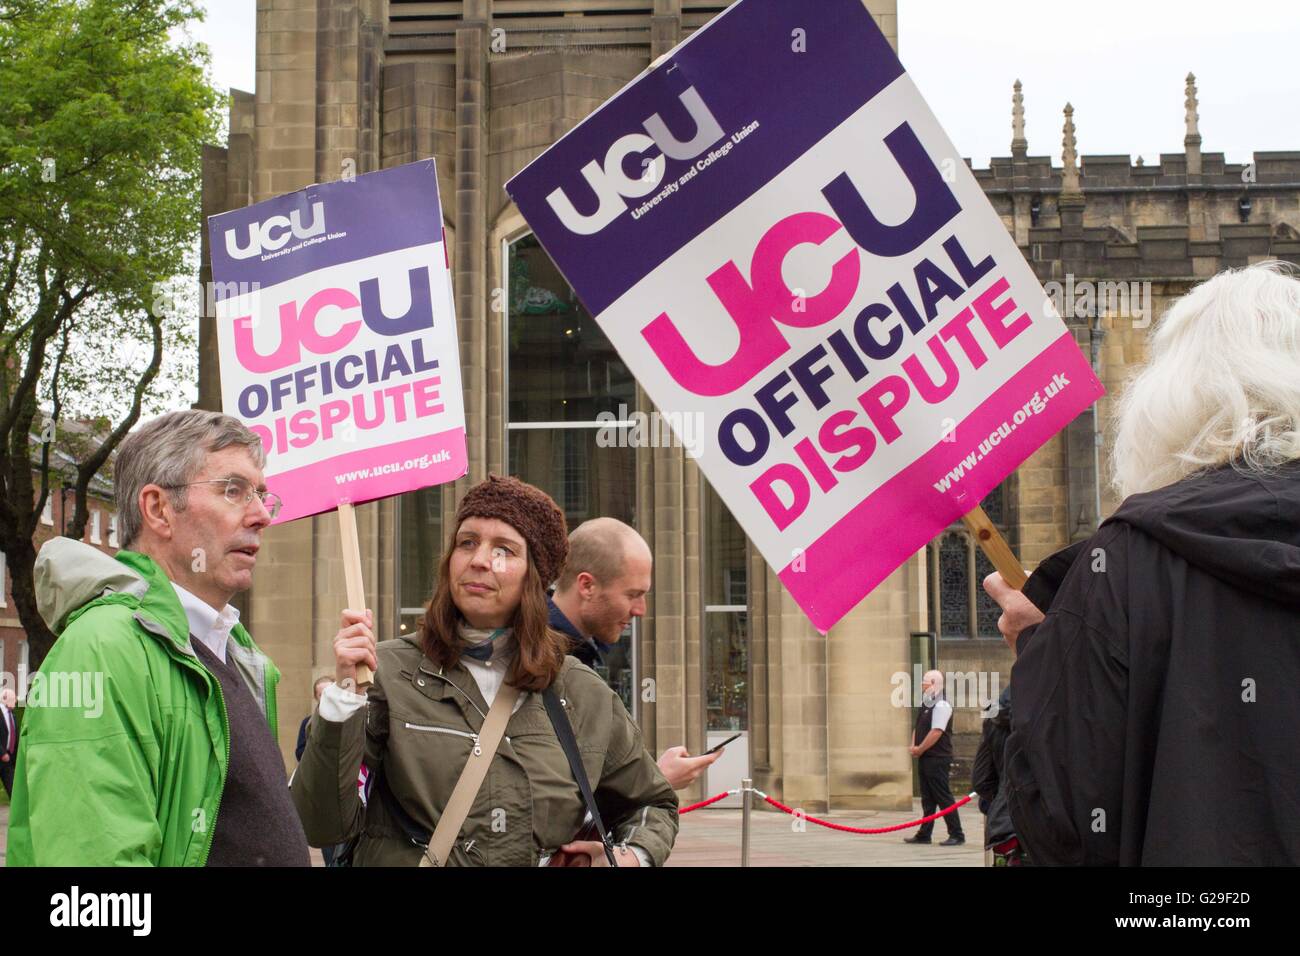 Universität und Union College (UCU) in Sheffield nahmen Streiks auf einen Rückgang ihrer realen Zahlen in den letzten Jahren. Stockfoto